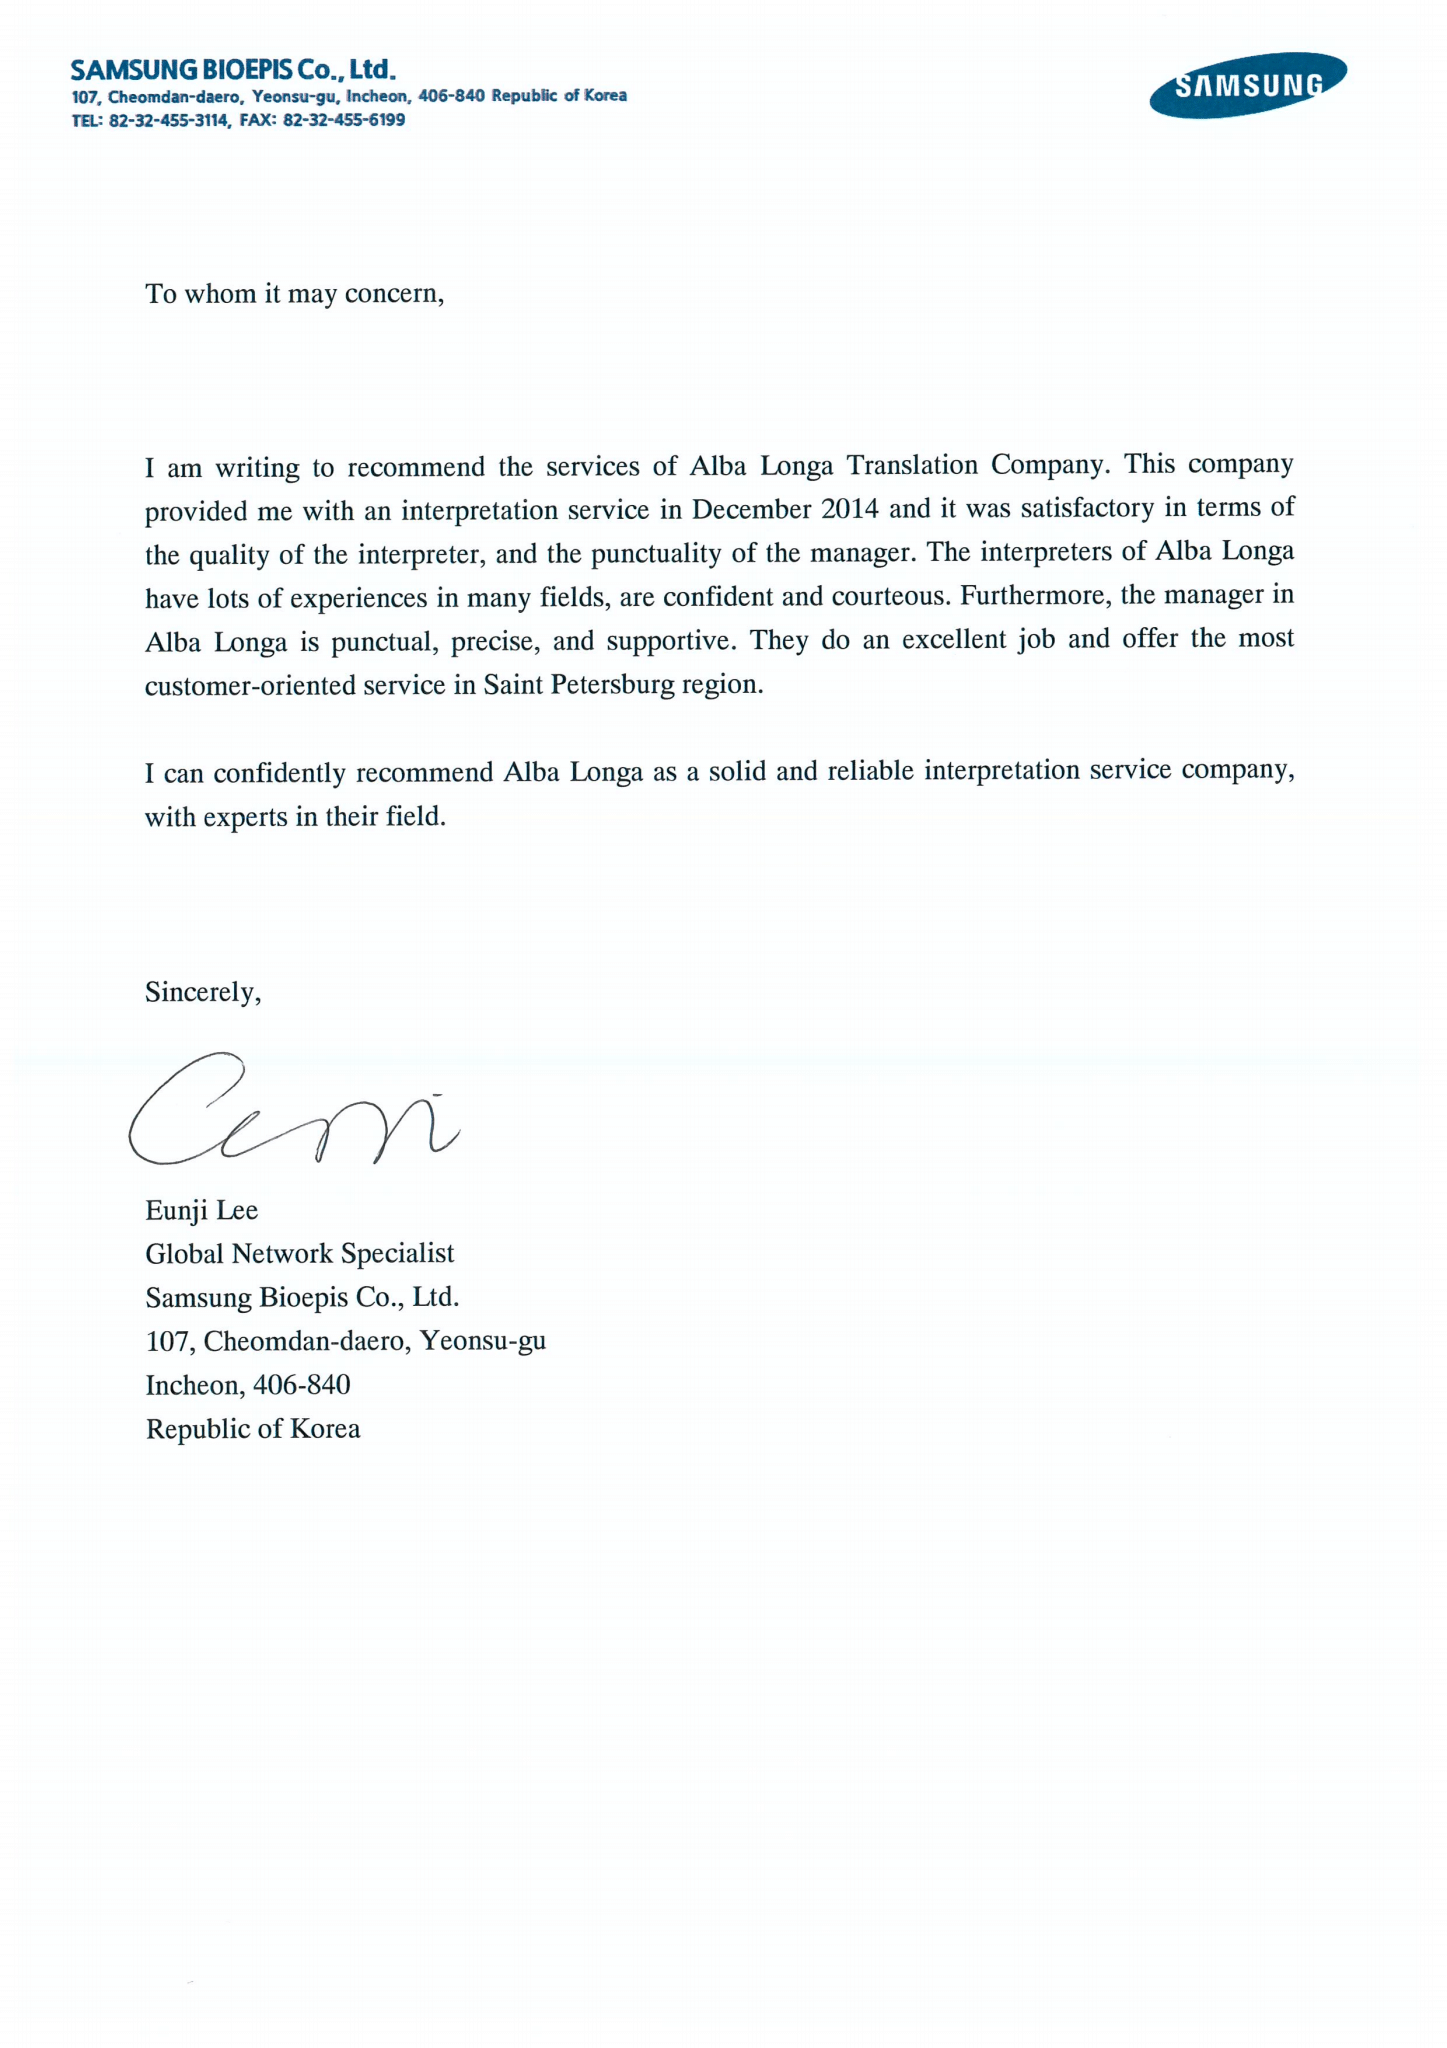 Рекомендательное письмо Samsung